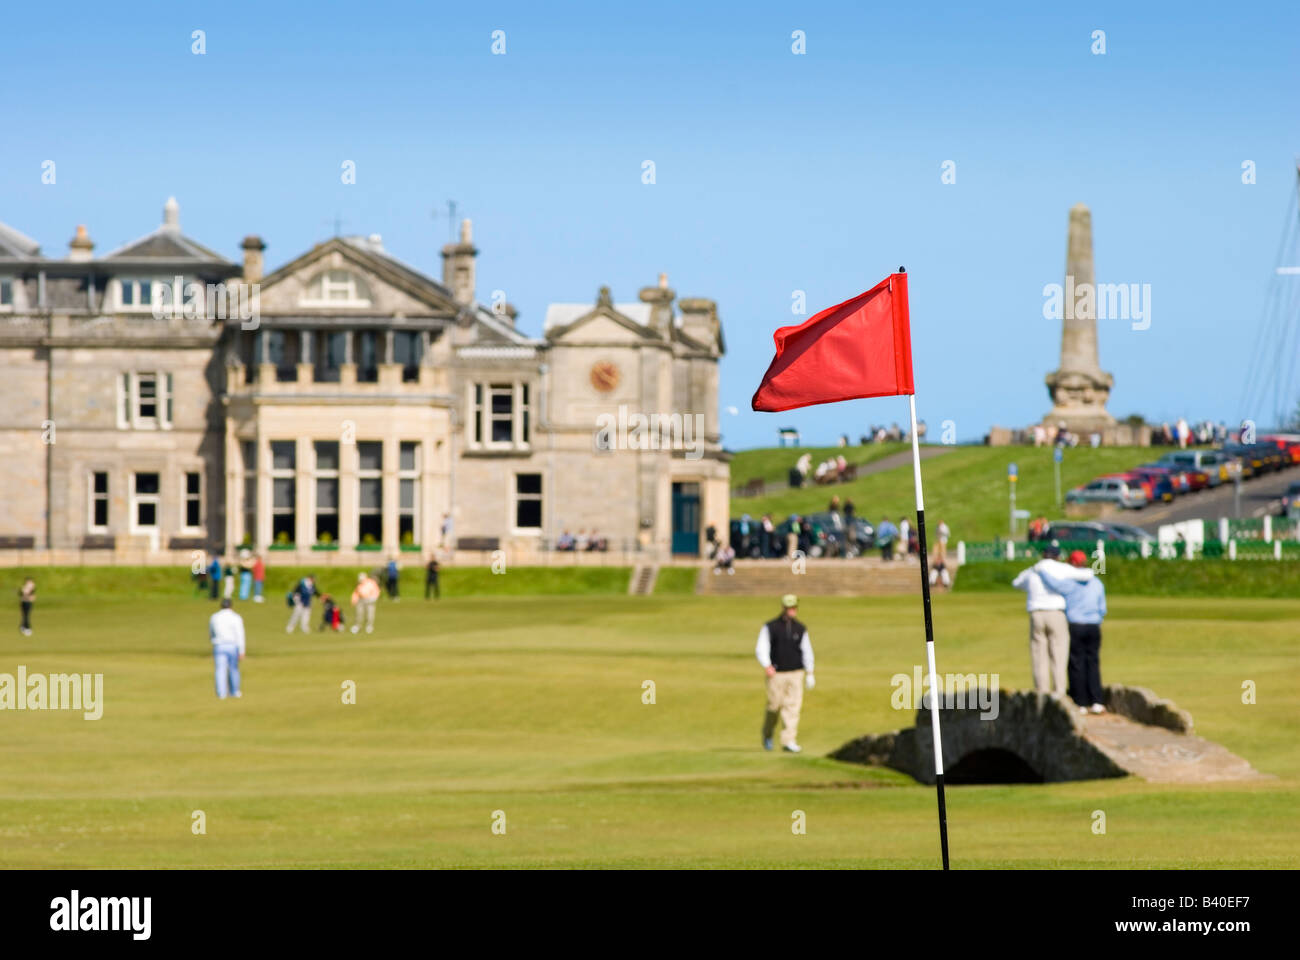 Des golfeurs sur le célèbre Old Course à St Andrews, Écosse avec Aplenty Poivron Bridge au premier plan Banque D'Images